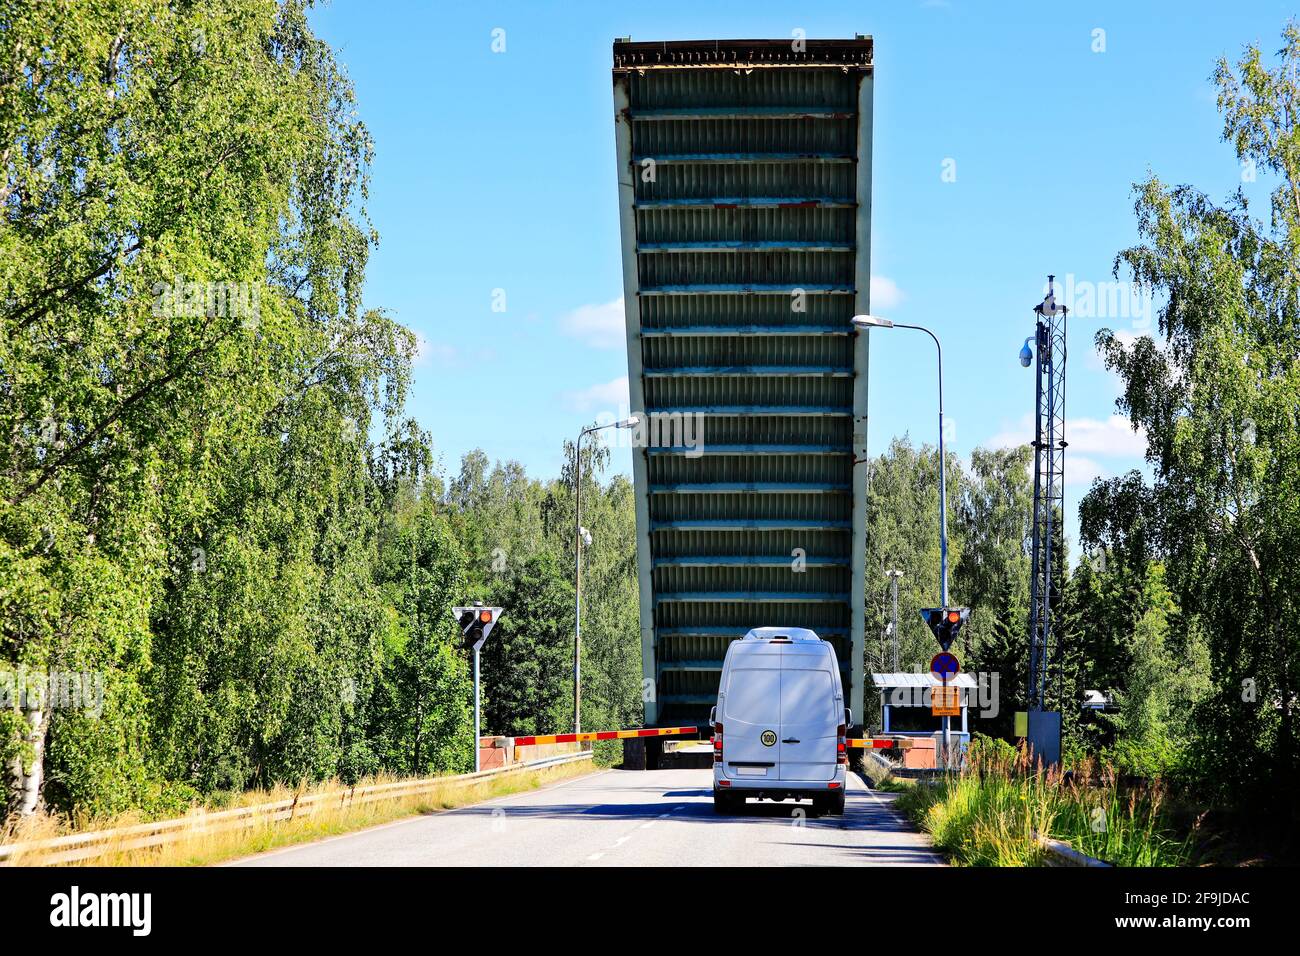 Erhöhte Liftbrücke mit einem Lieferwagen am Strömma-Kanal. Der Strömma-Kanal liegt an der Grenze der Gemeinden Kimitoön und Salo, Finnland. Stockfoto